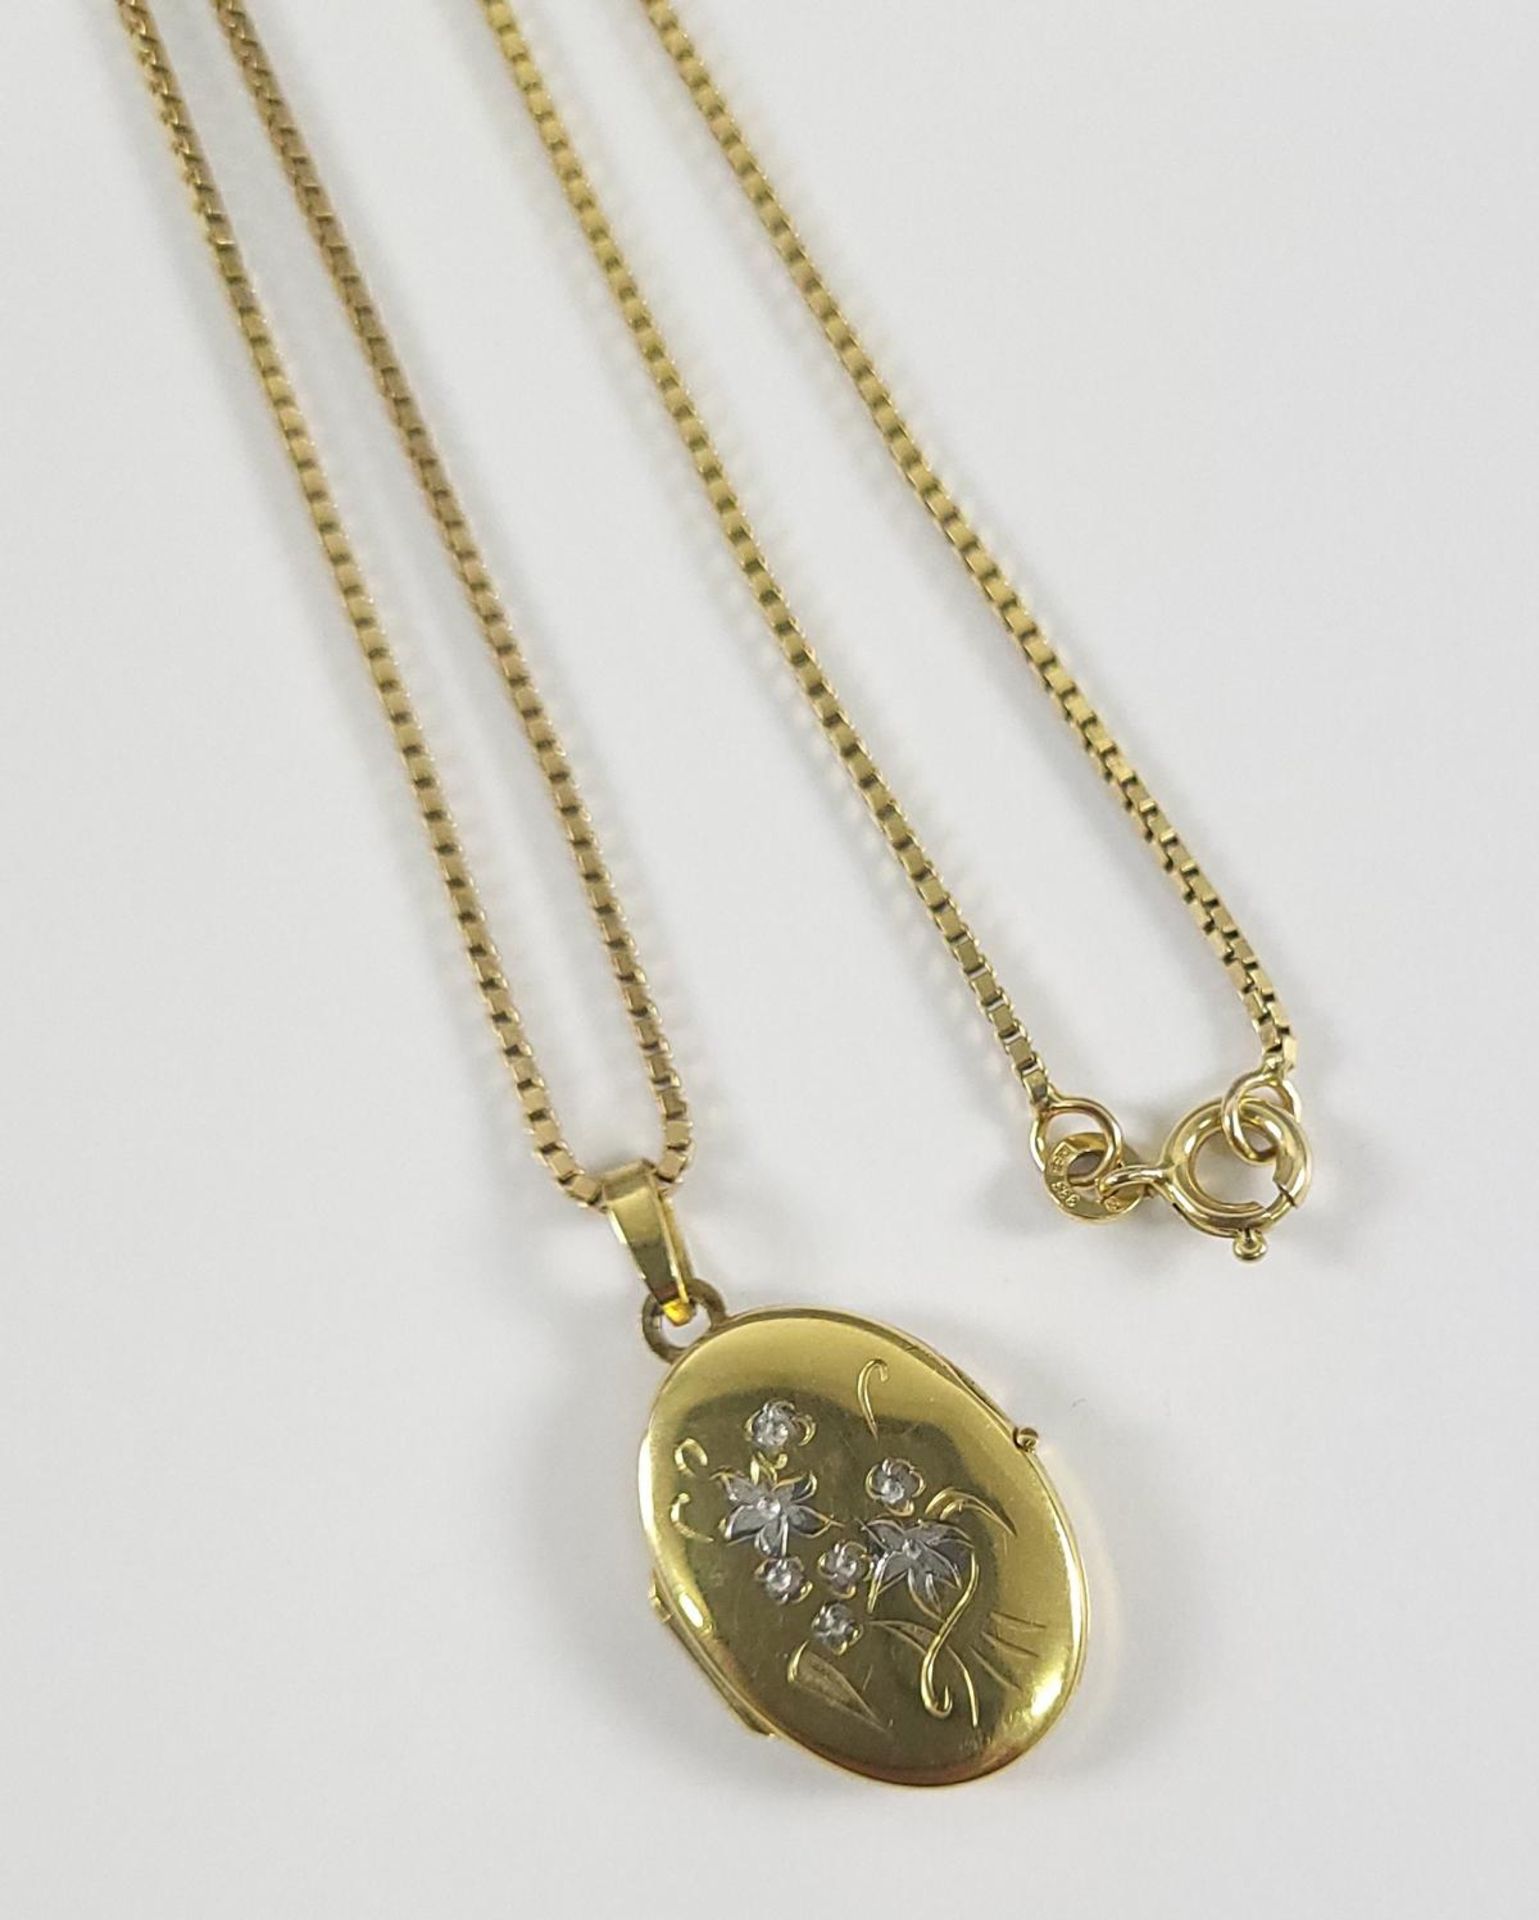 Halskette mit Medaillon, 8 Karat Gelbgold - Image 2 of 4